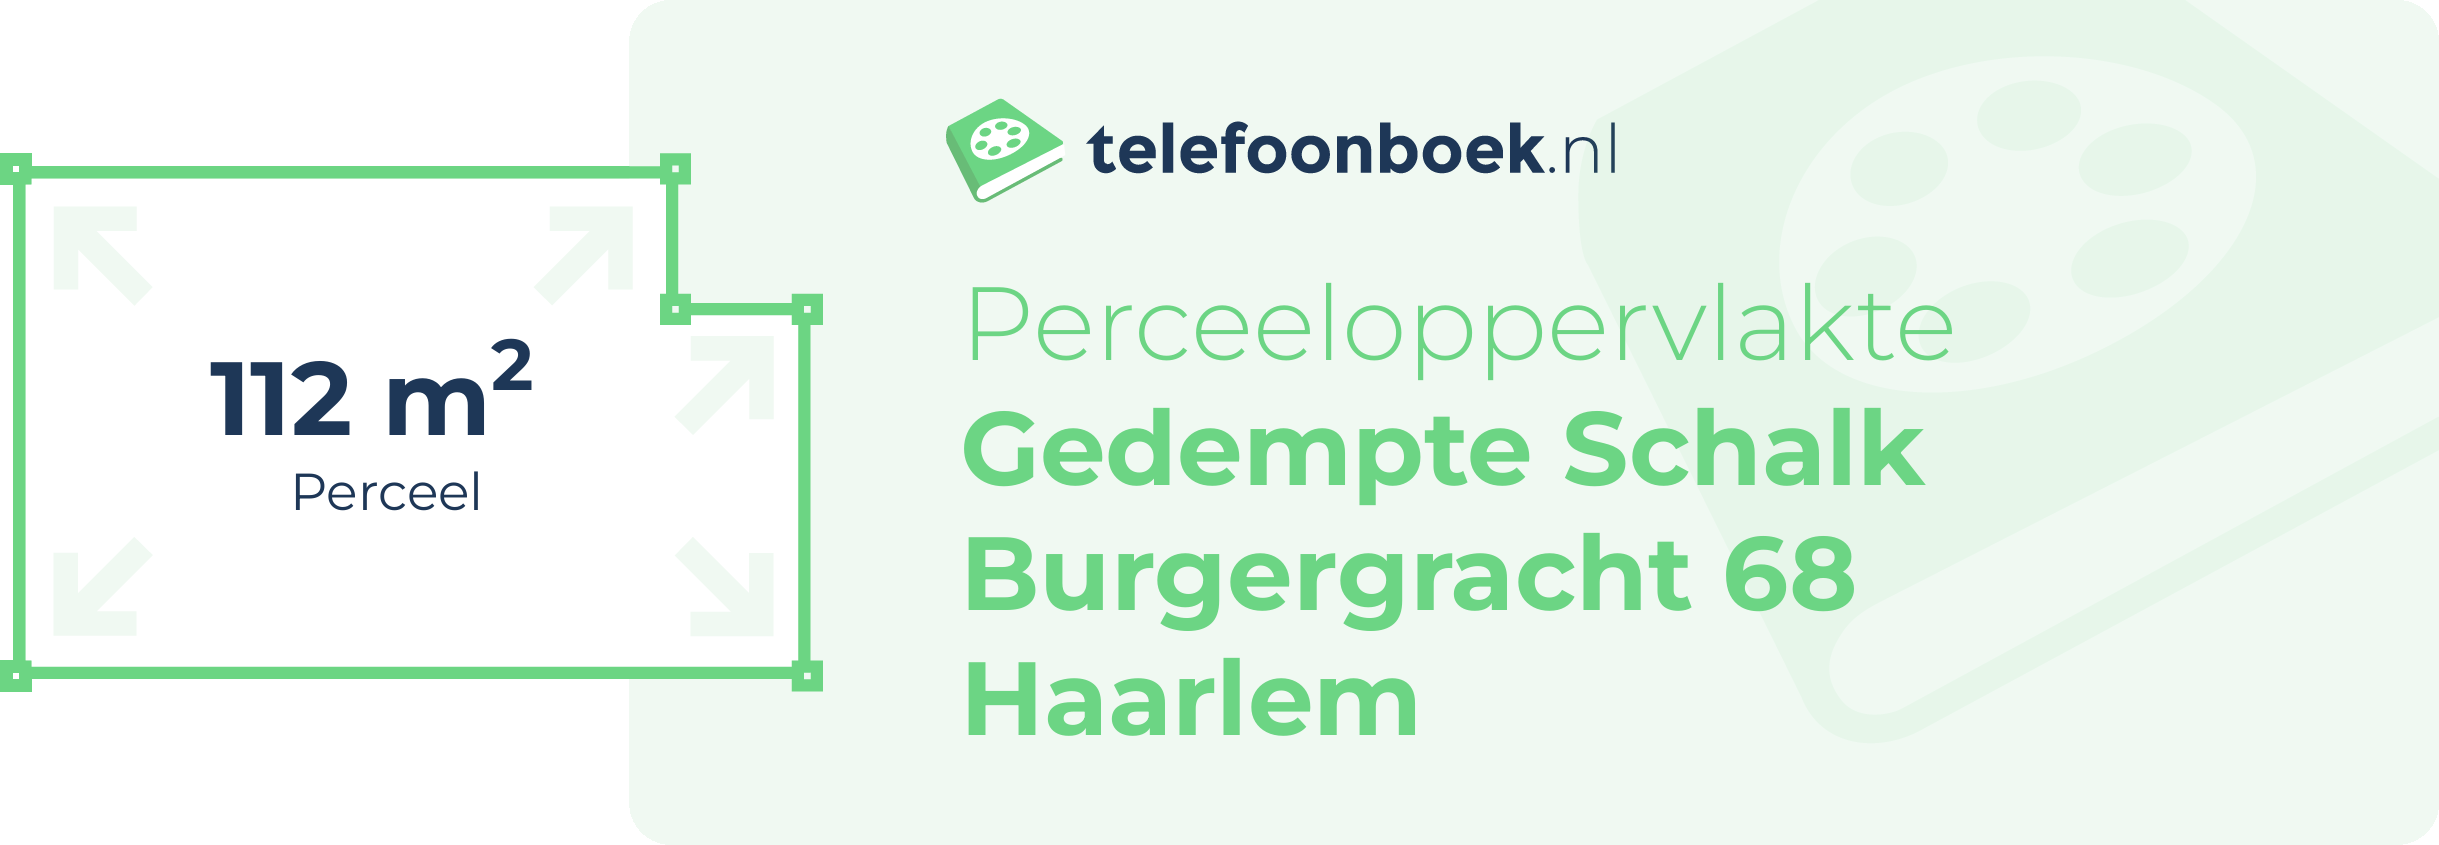 Perceeloppervlakte Gedempte Schalk Burgergracht 68 Haarlem